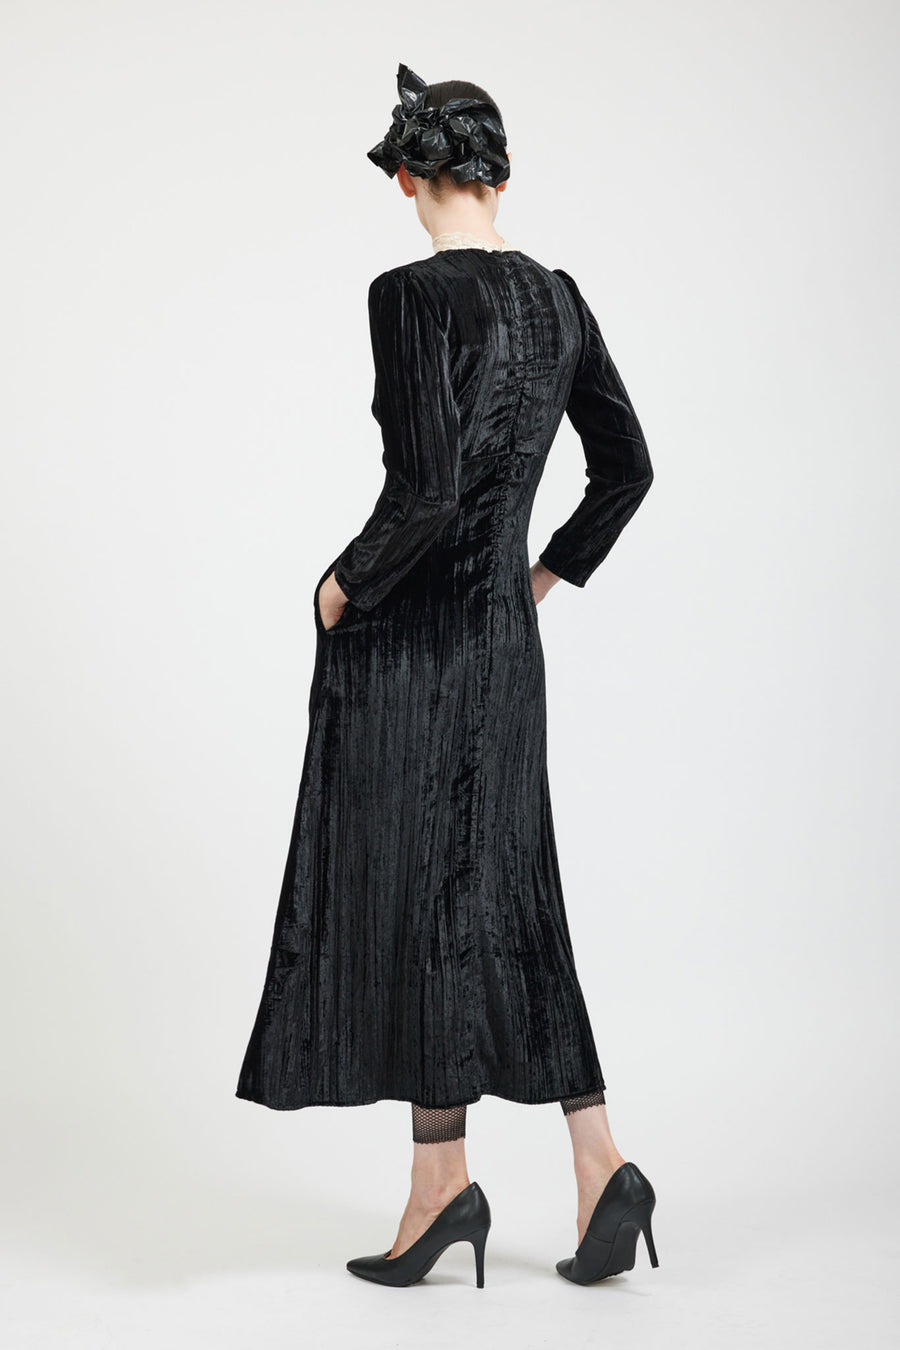 BATSHEVA - Maryjane Dress in Black Crushed Velvet